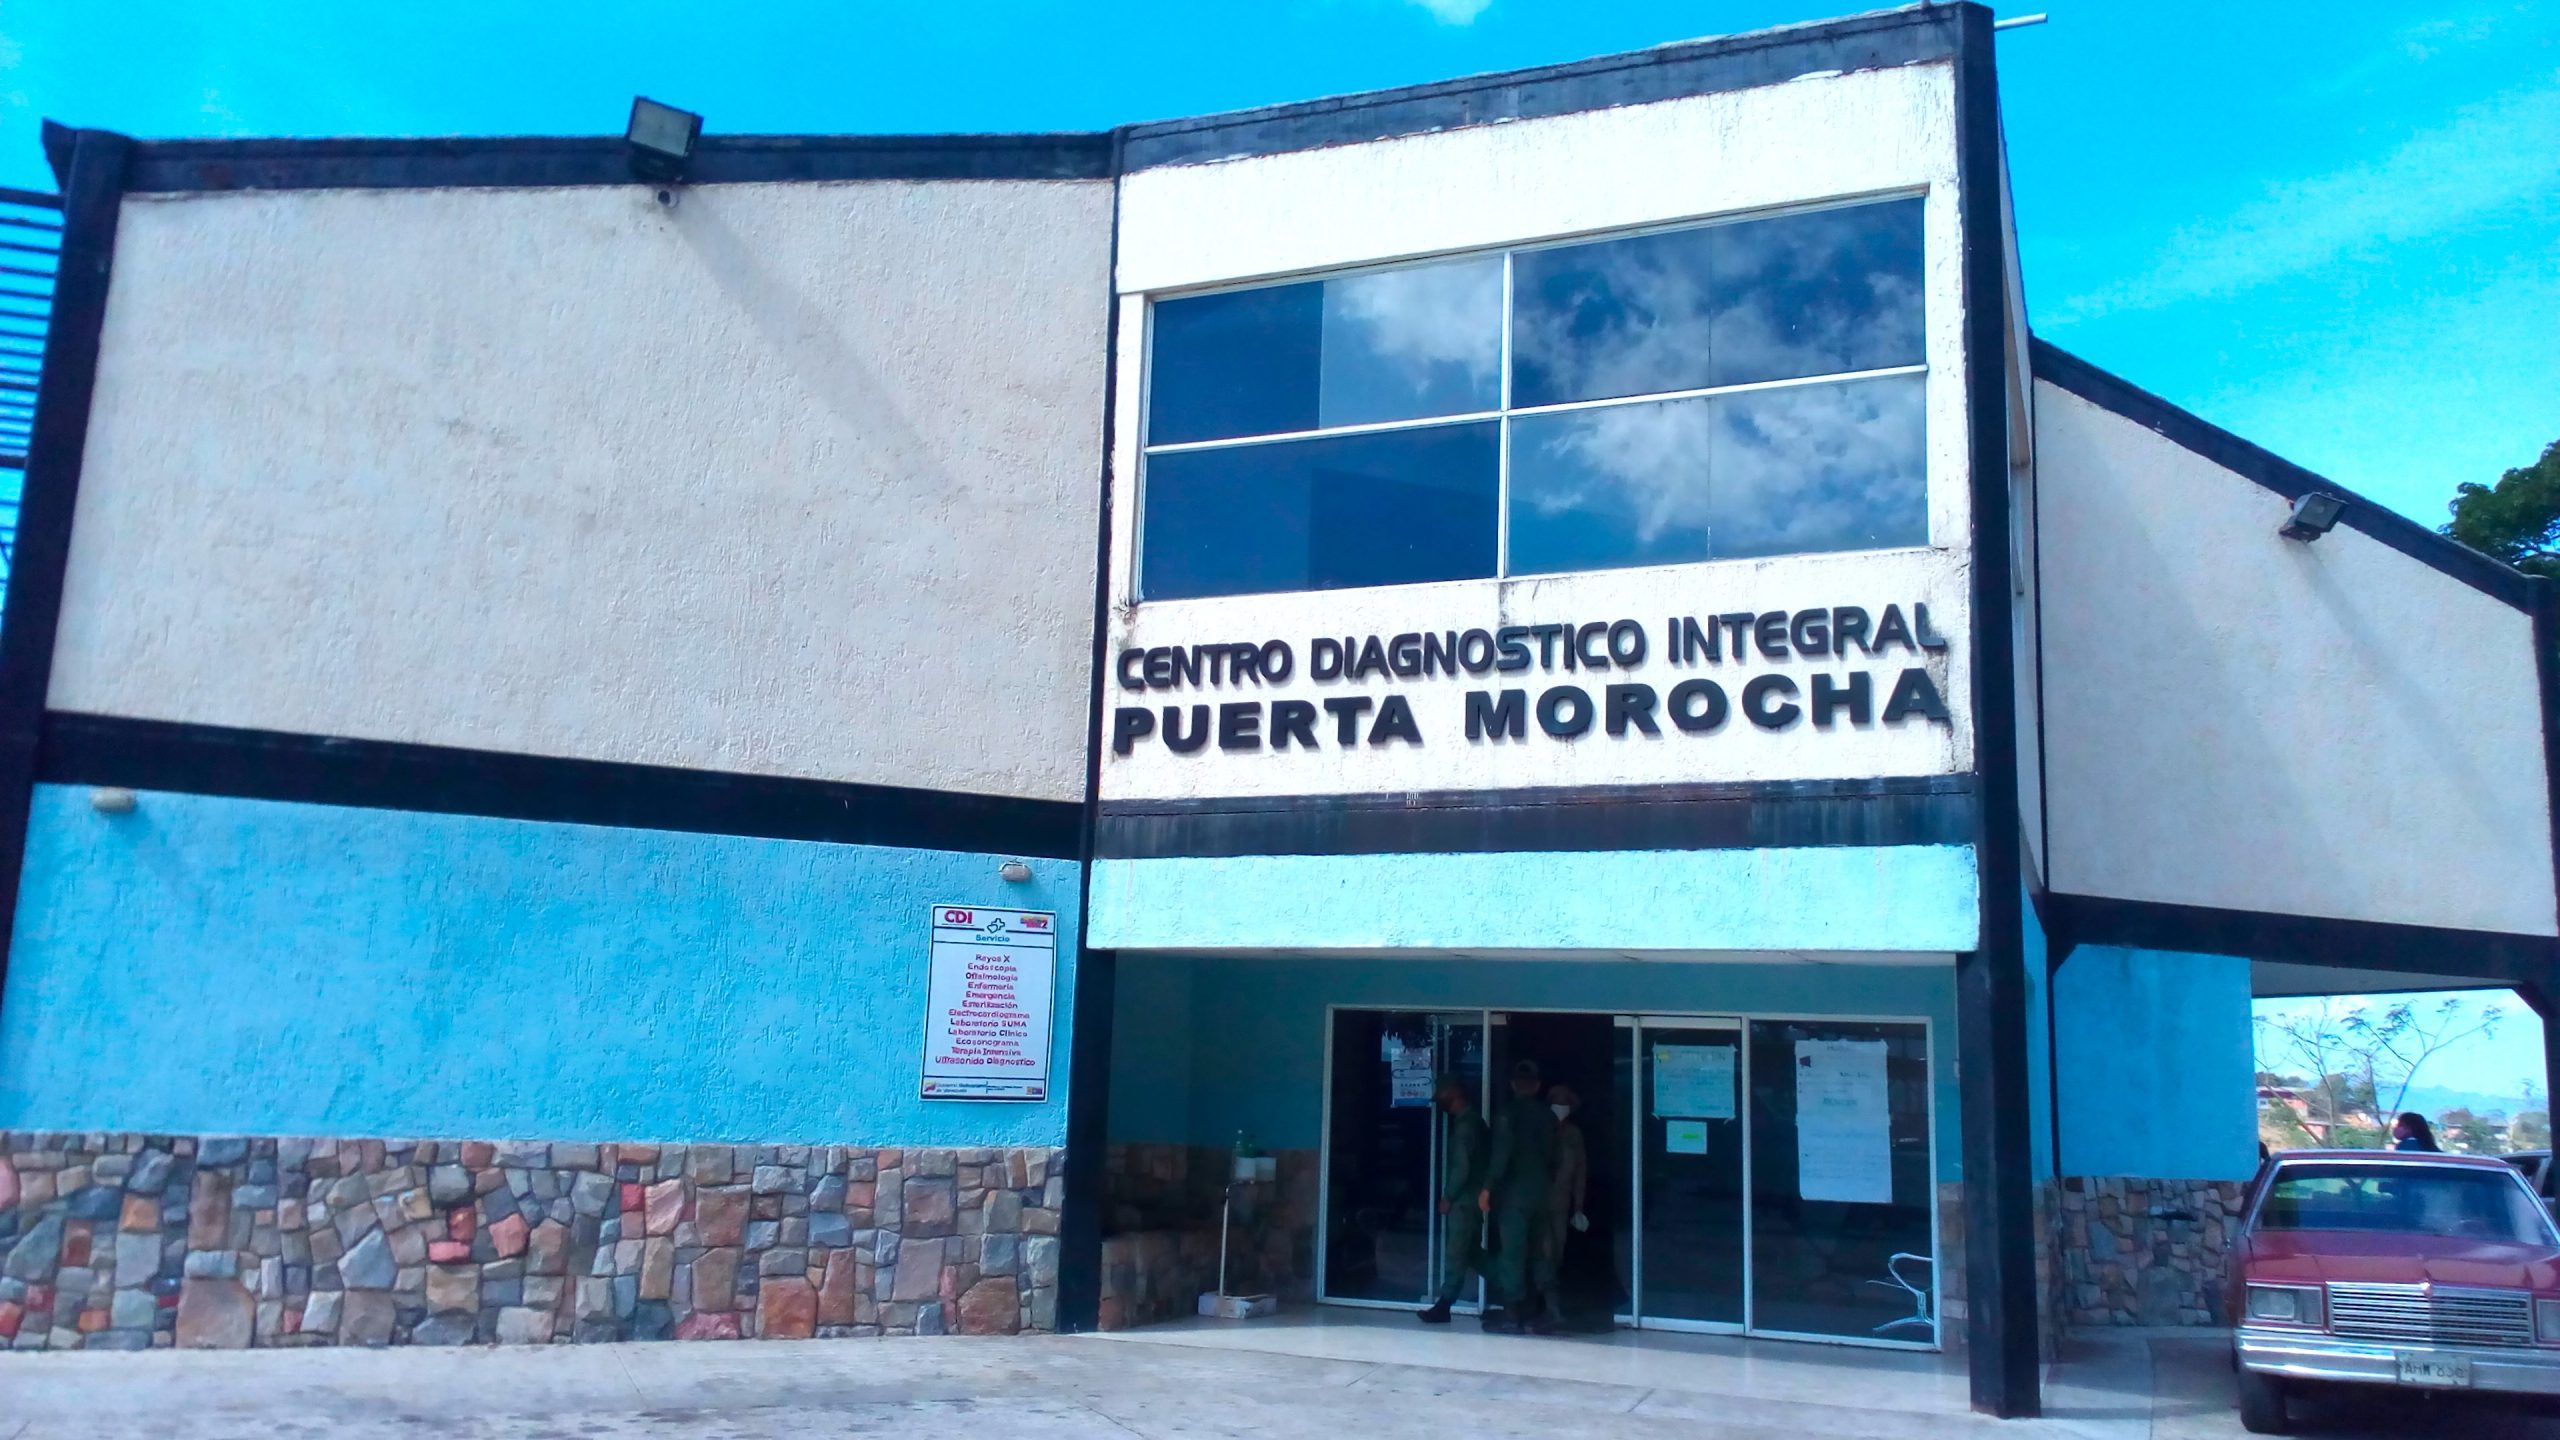 CDI de Puerta Morocha contabiliza 800 despistajes de Covid-19